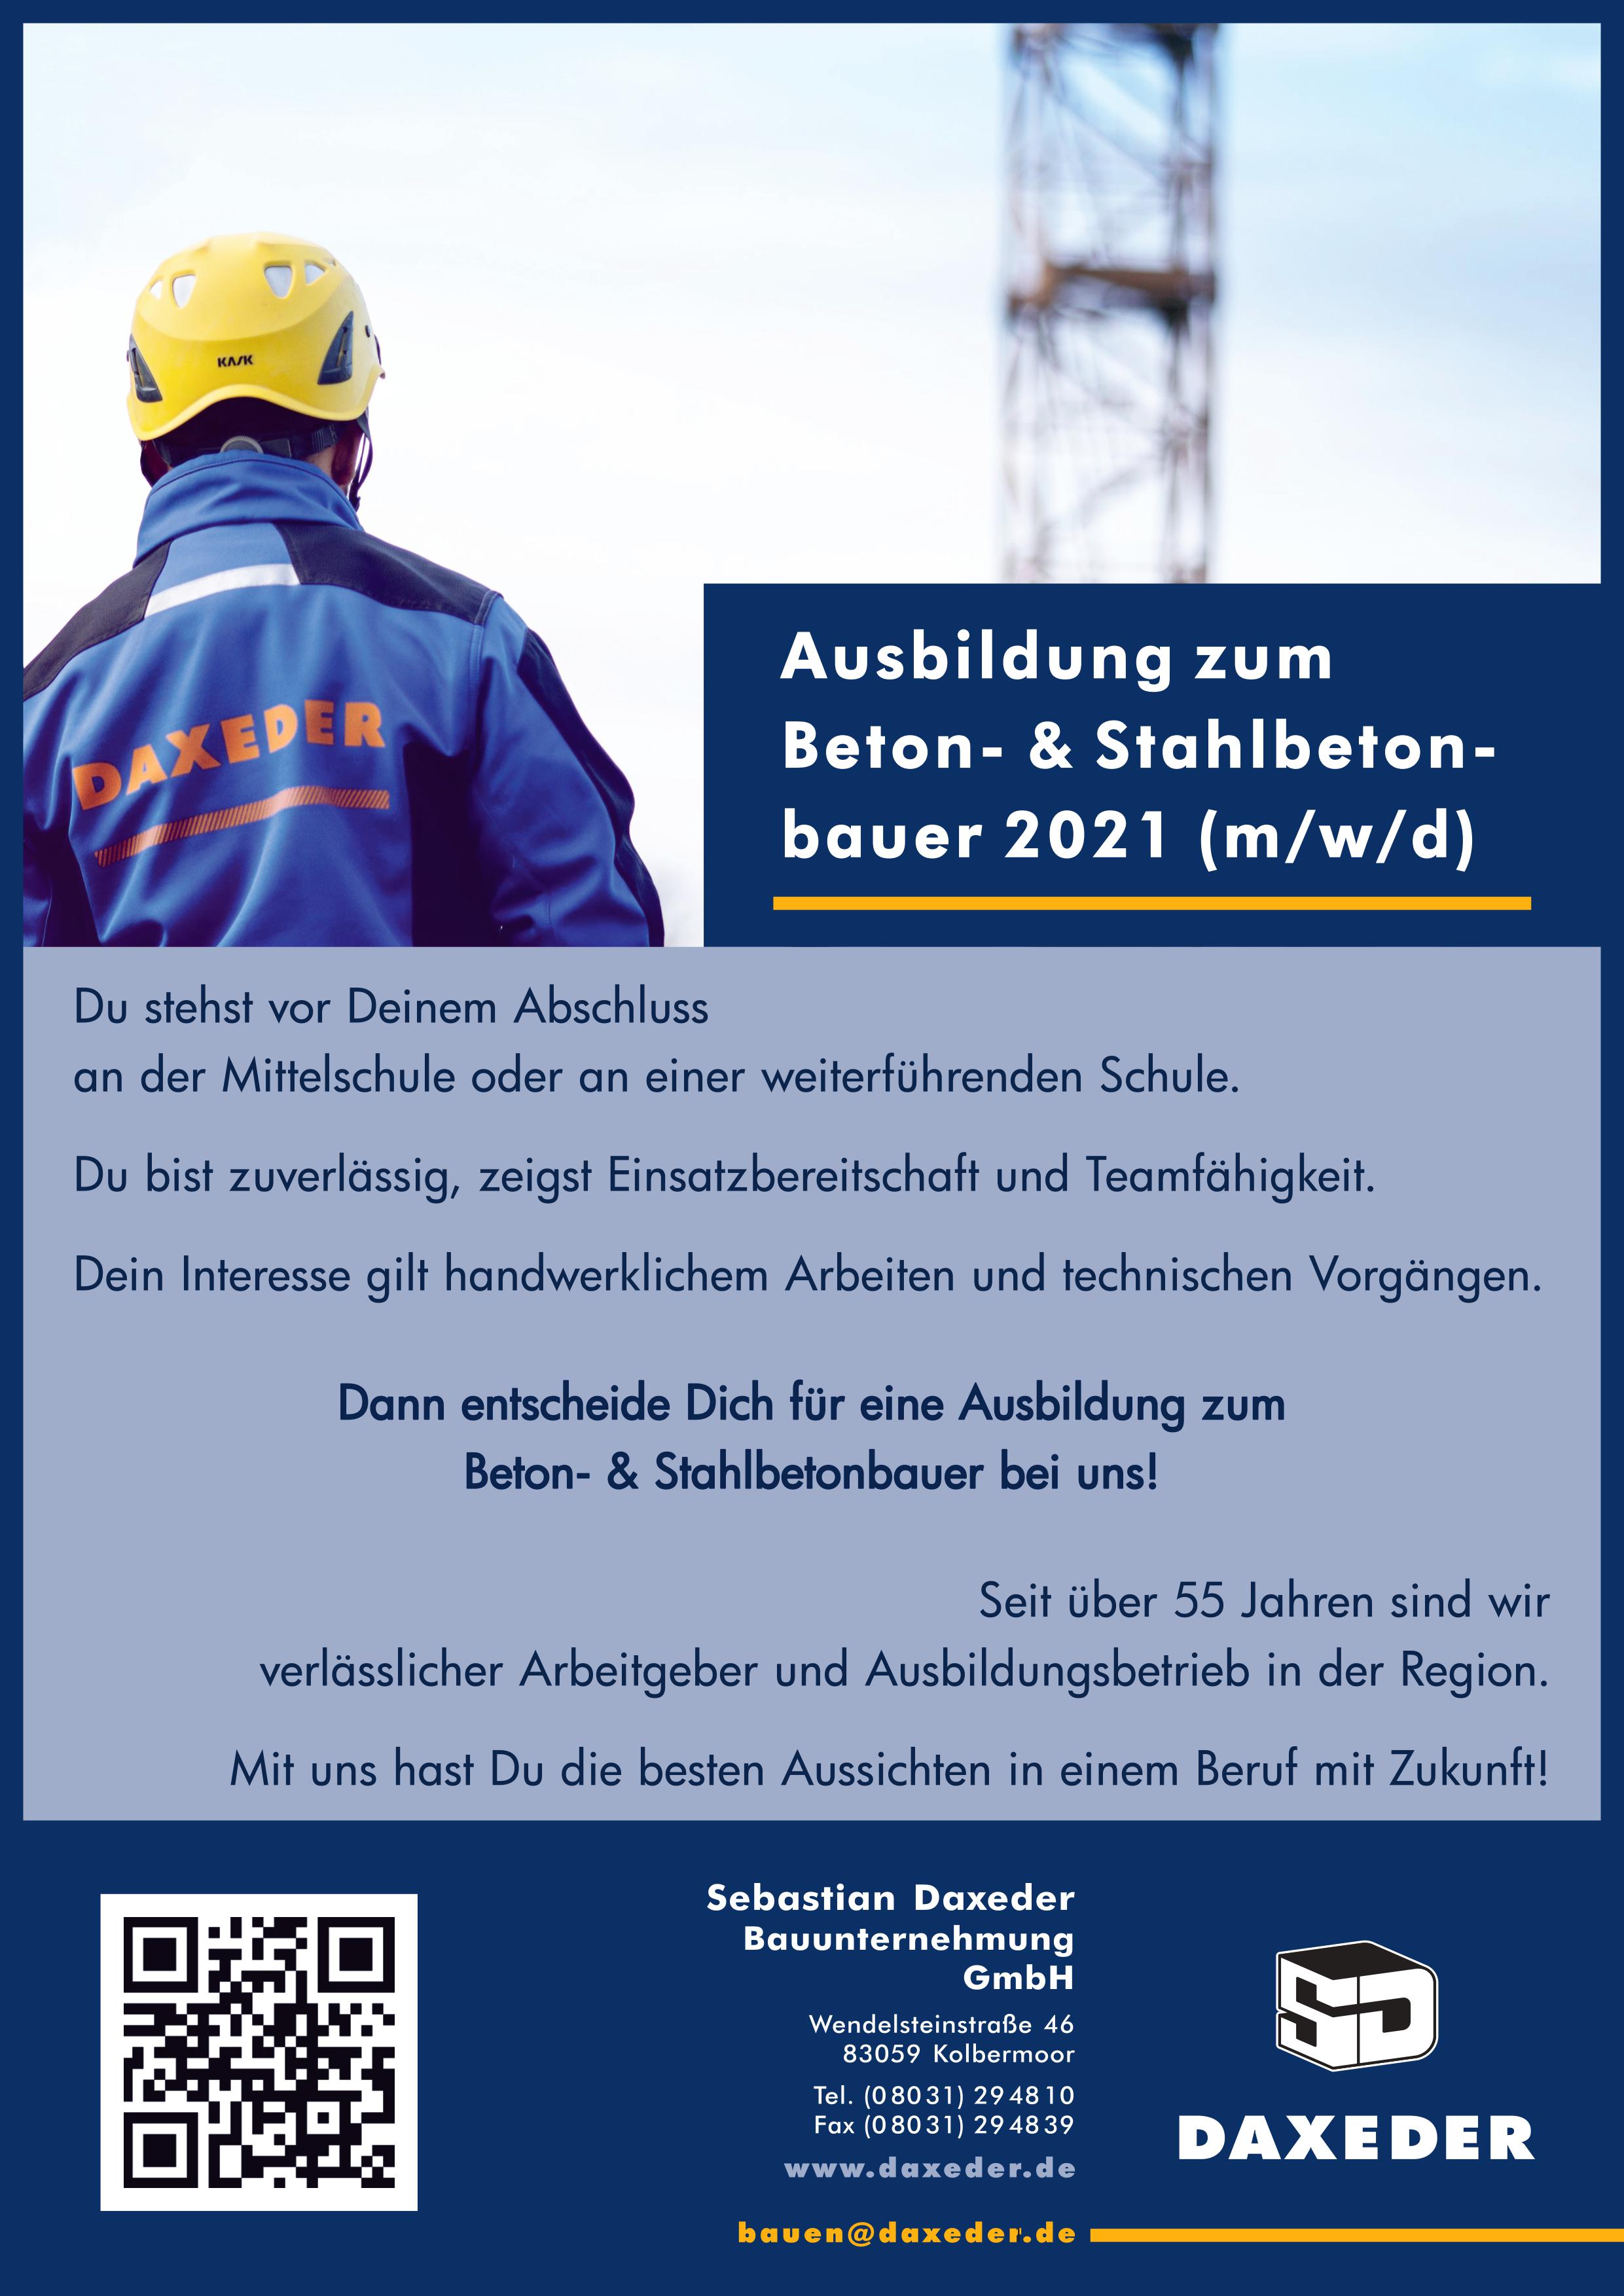 Sebastian Daxeder Bauunternehmung GmbH, Ausbildung, 2021, Beton- und Stahlbetonbauer, Kolbermoor, Rosenheim